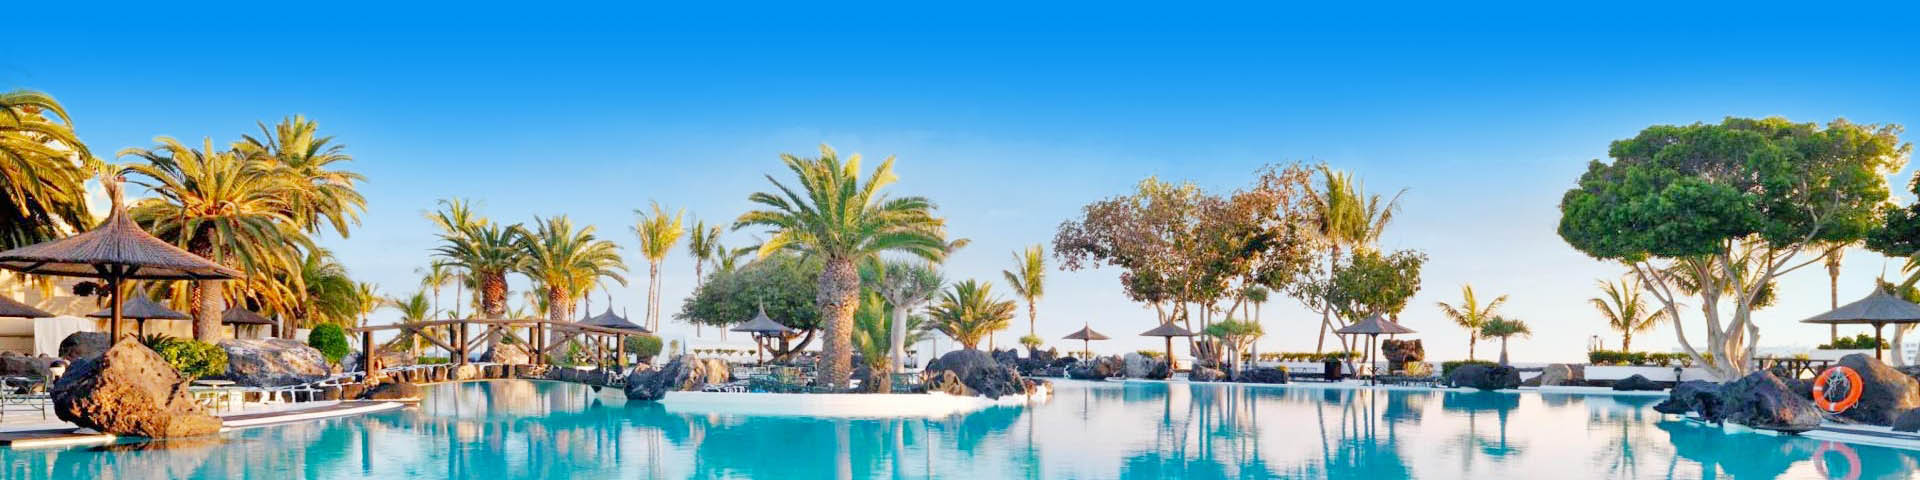 Zwembad bij een hotel op de Canarische Eilanden in de meivakantie